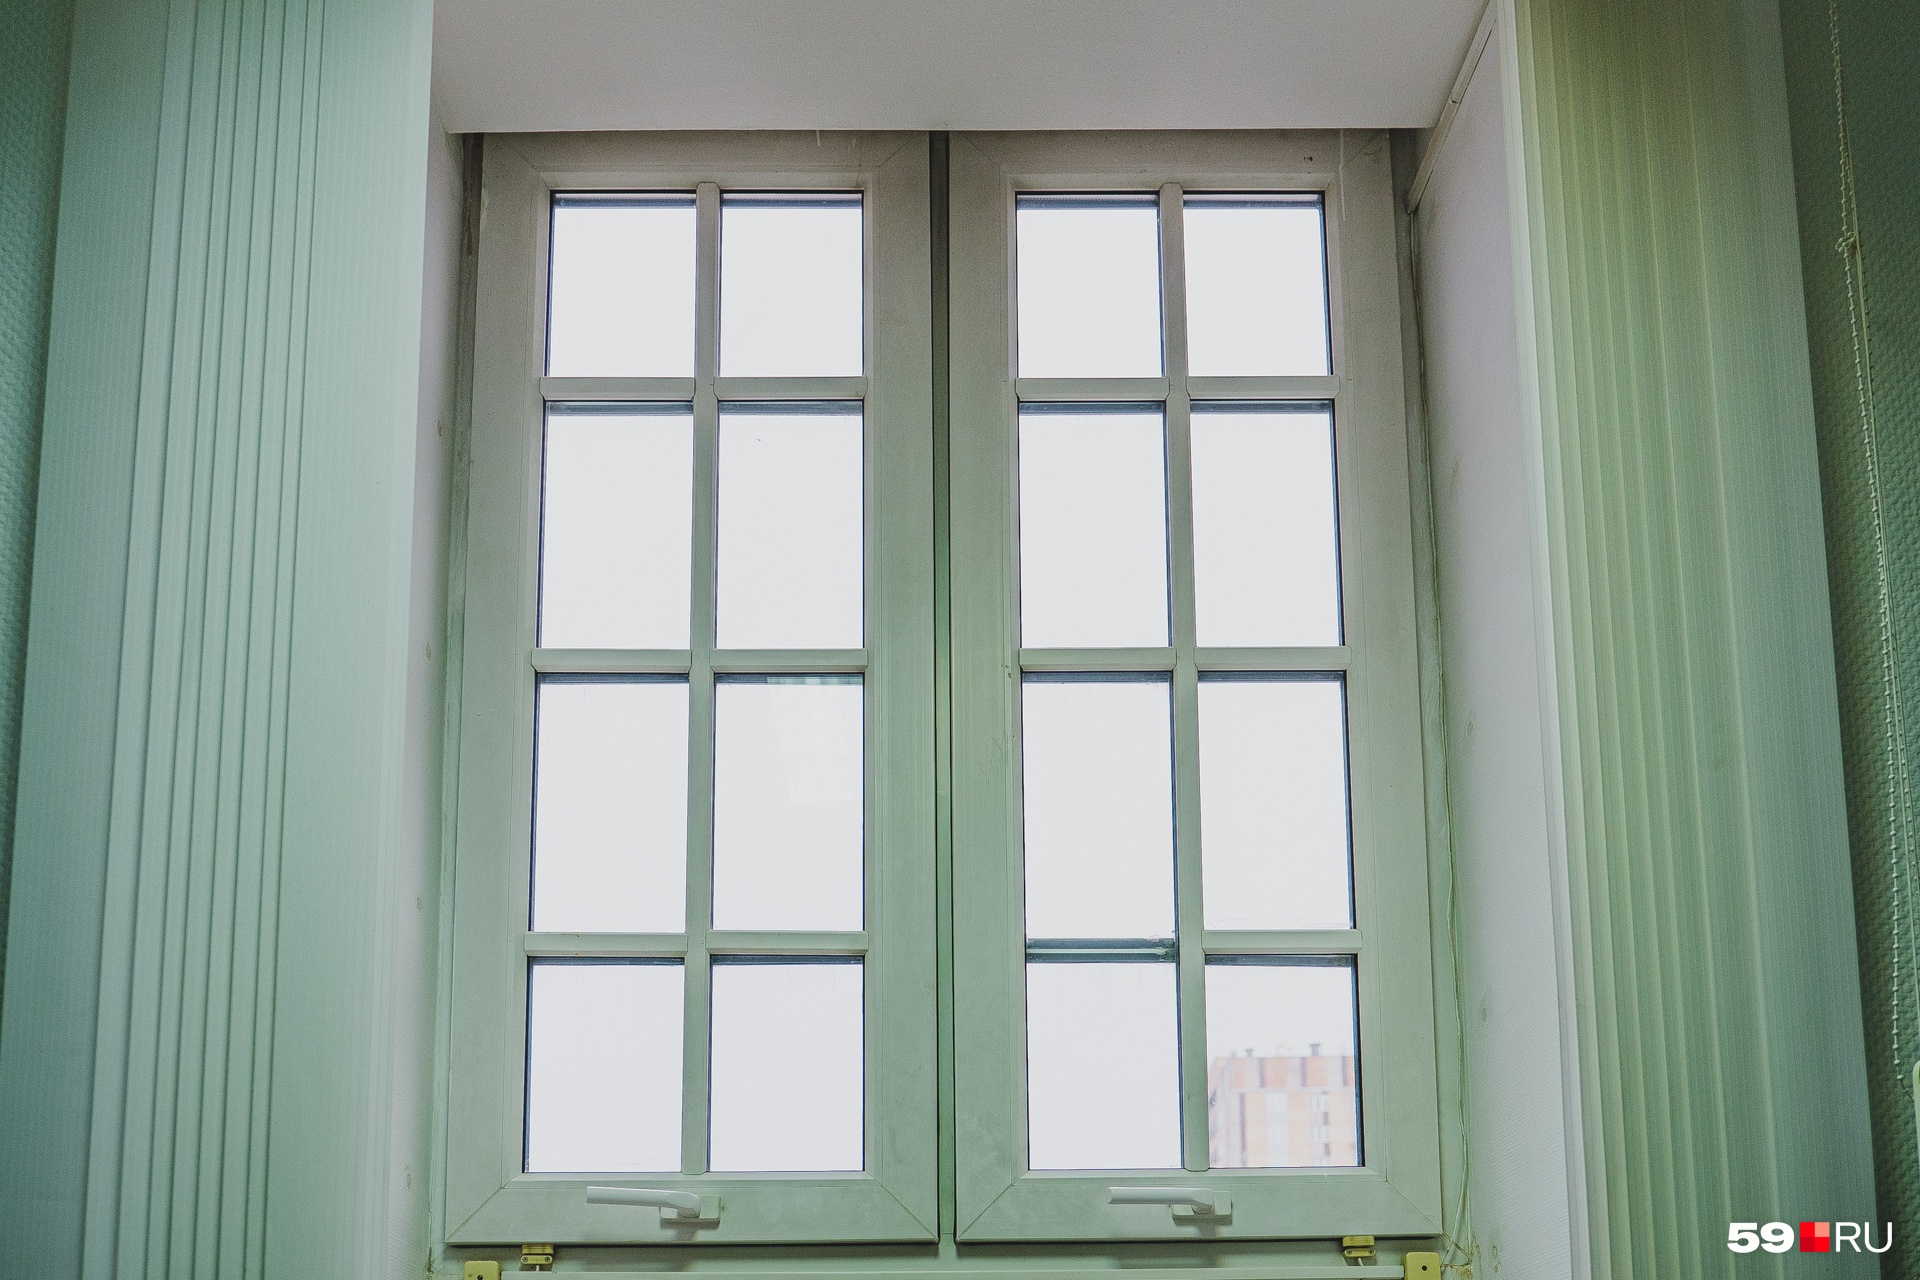 Окно в кабинете — часть большой белой арки, которая видна снаружи